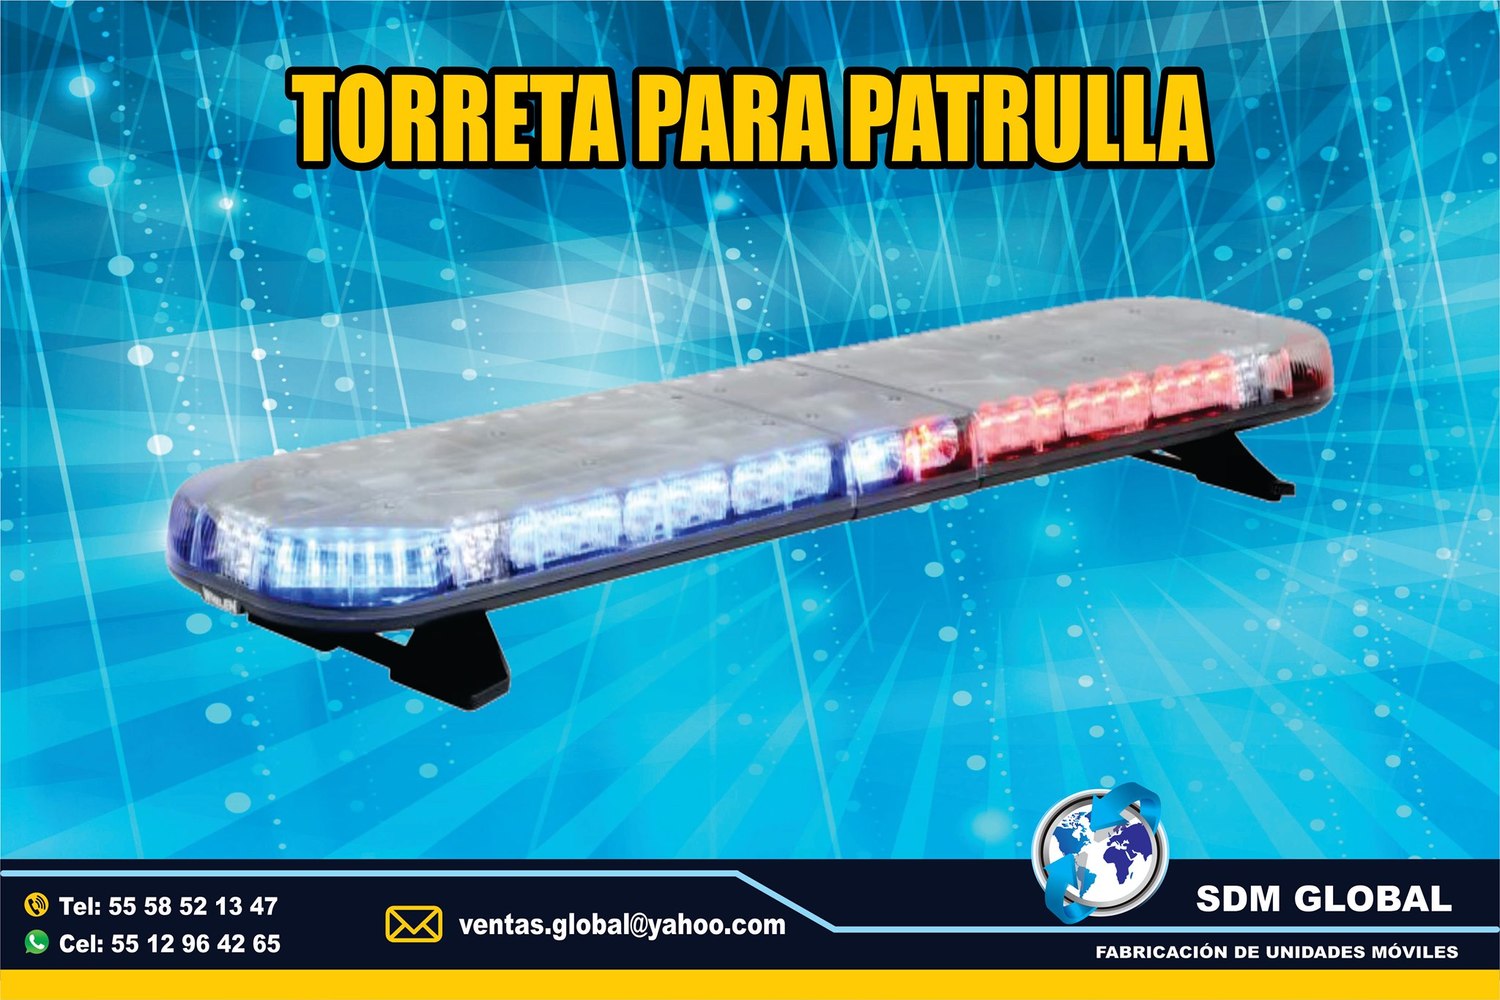 <span style="font-weight: bold;">Venta de Barra o Torreta para patrullas color rojo azul Whelen</span><br>